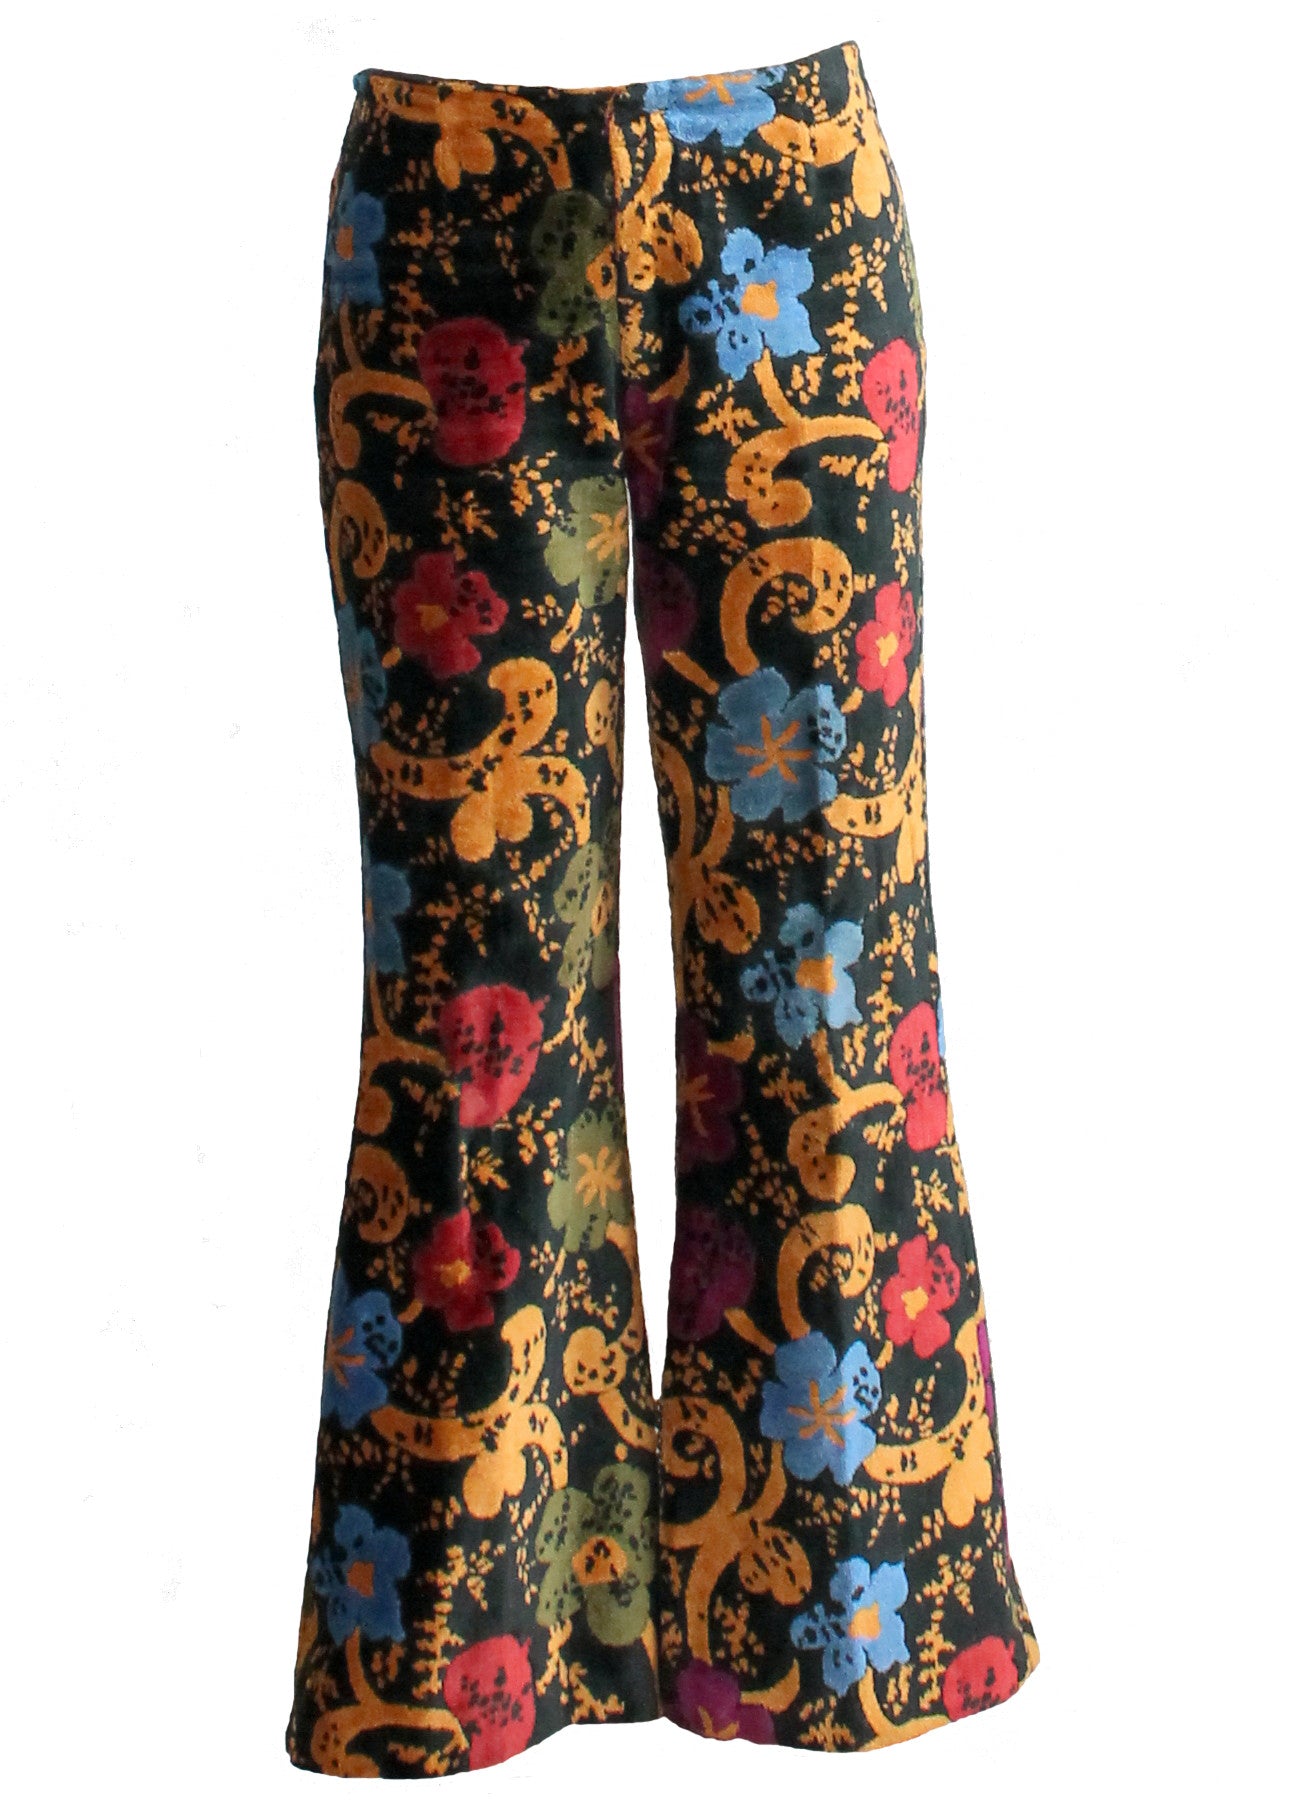 https://raleighvintage.com/cdn/shop/products/Vintage_1960s_floral_carpet_bell_bottom_pants1_2048x.jpg?v=1571266561